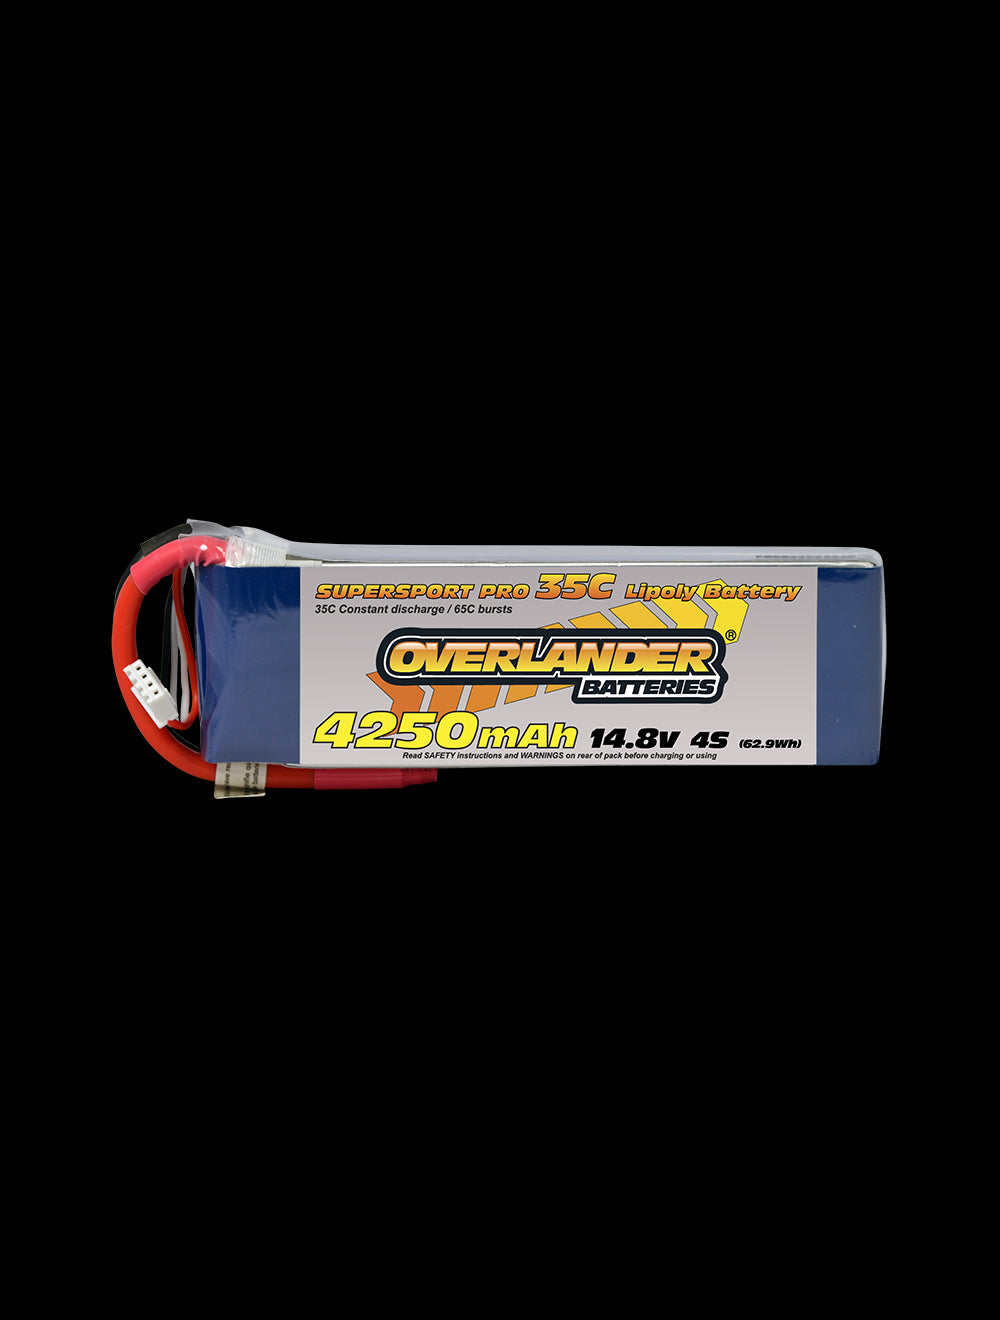 Overlander 4250mAh 14.8V 4S 35C Supersport Pro LiPo Battery - XT60 Connector 2476